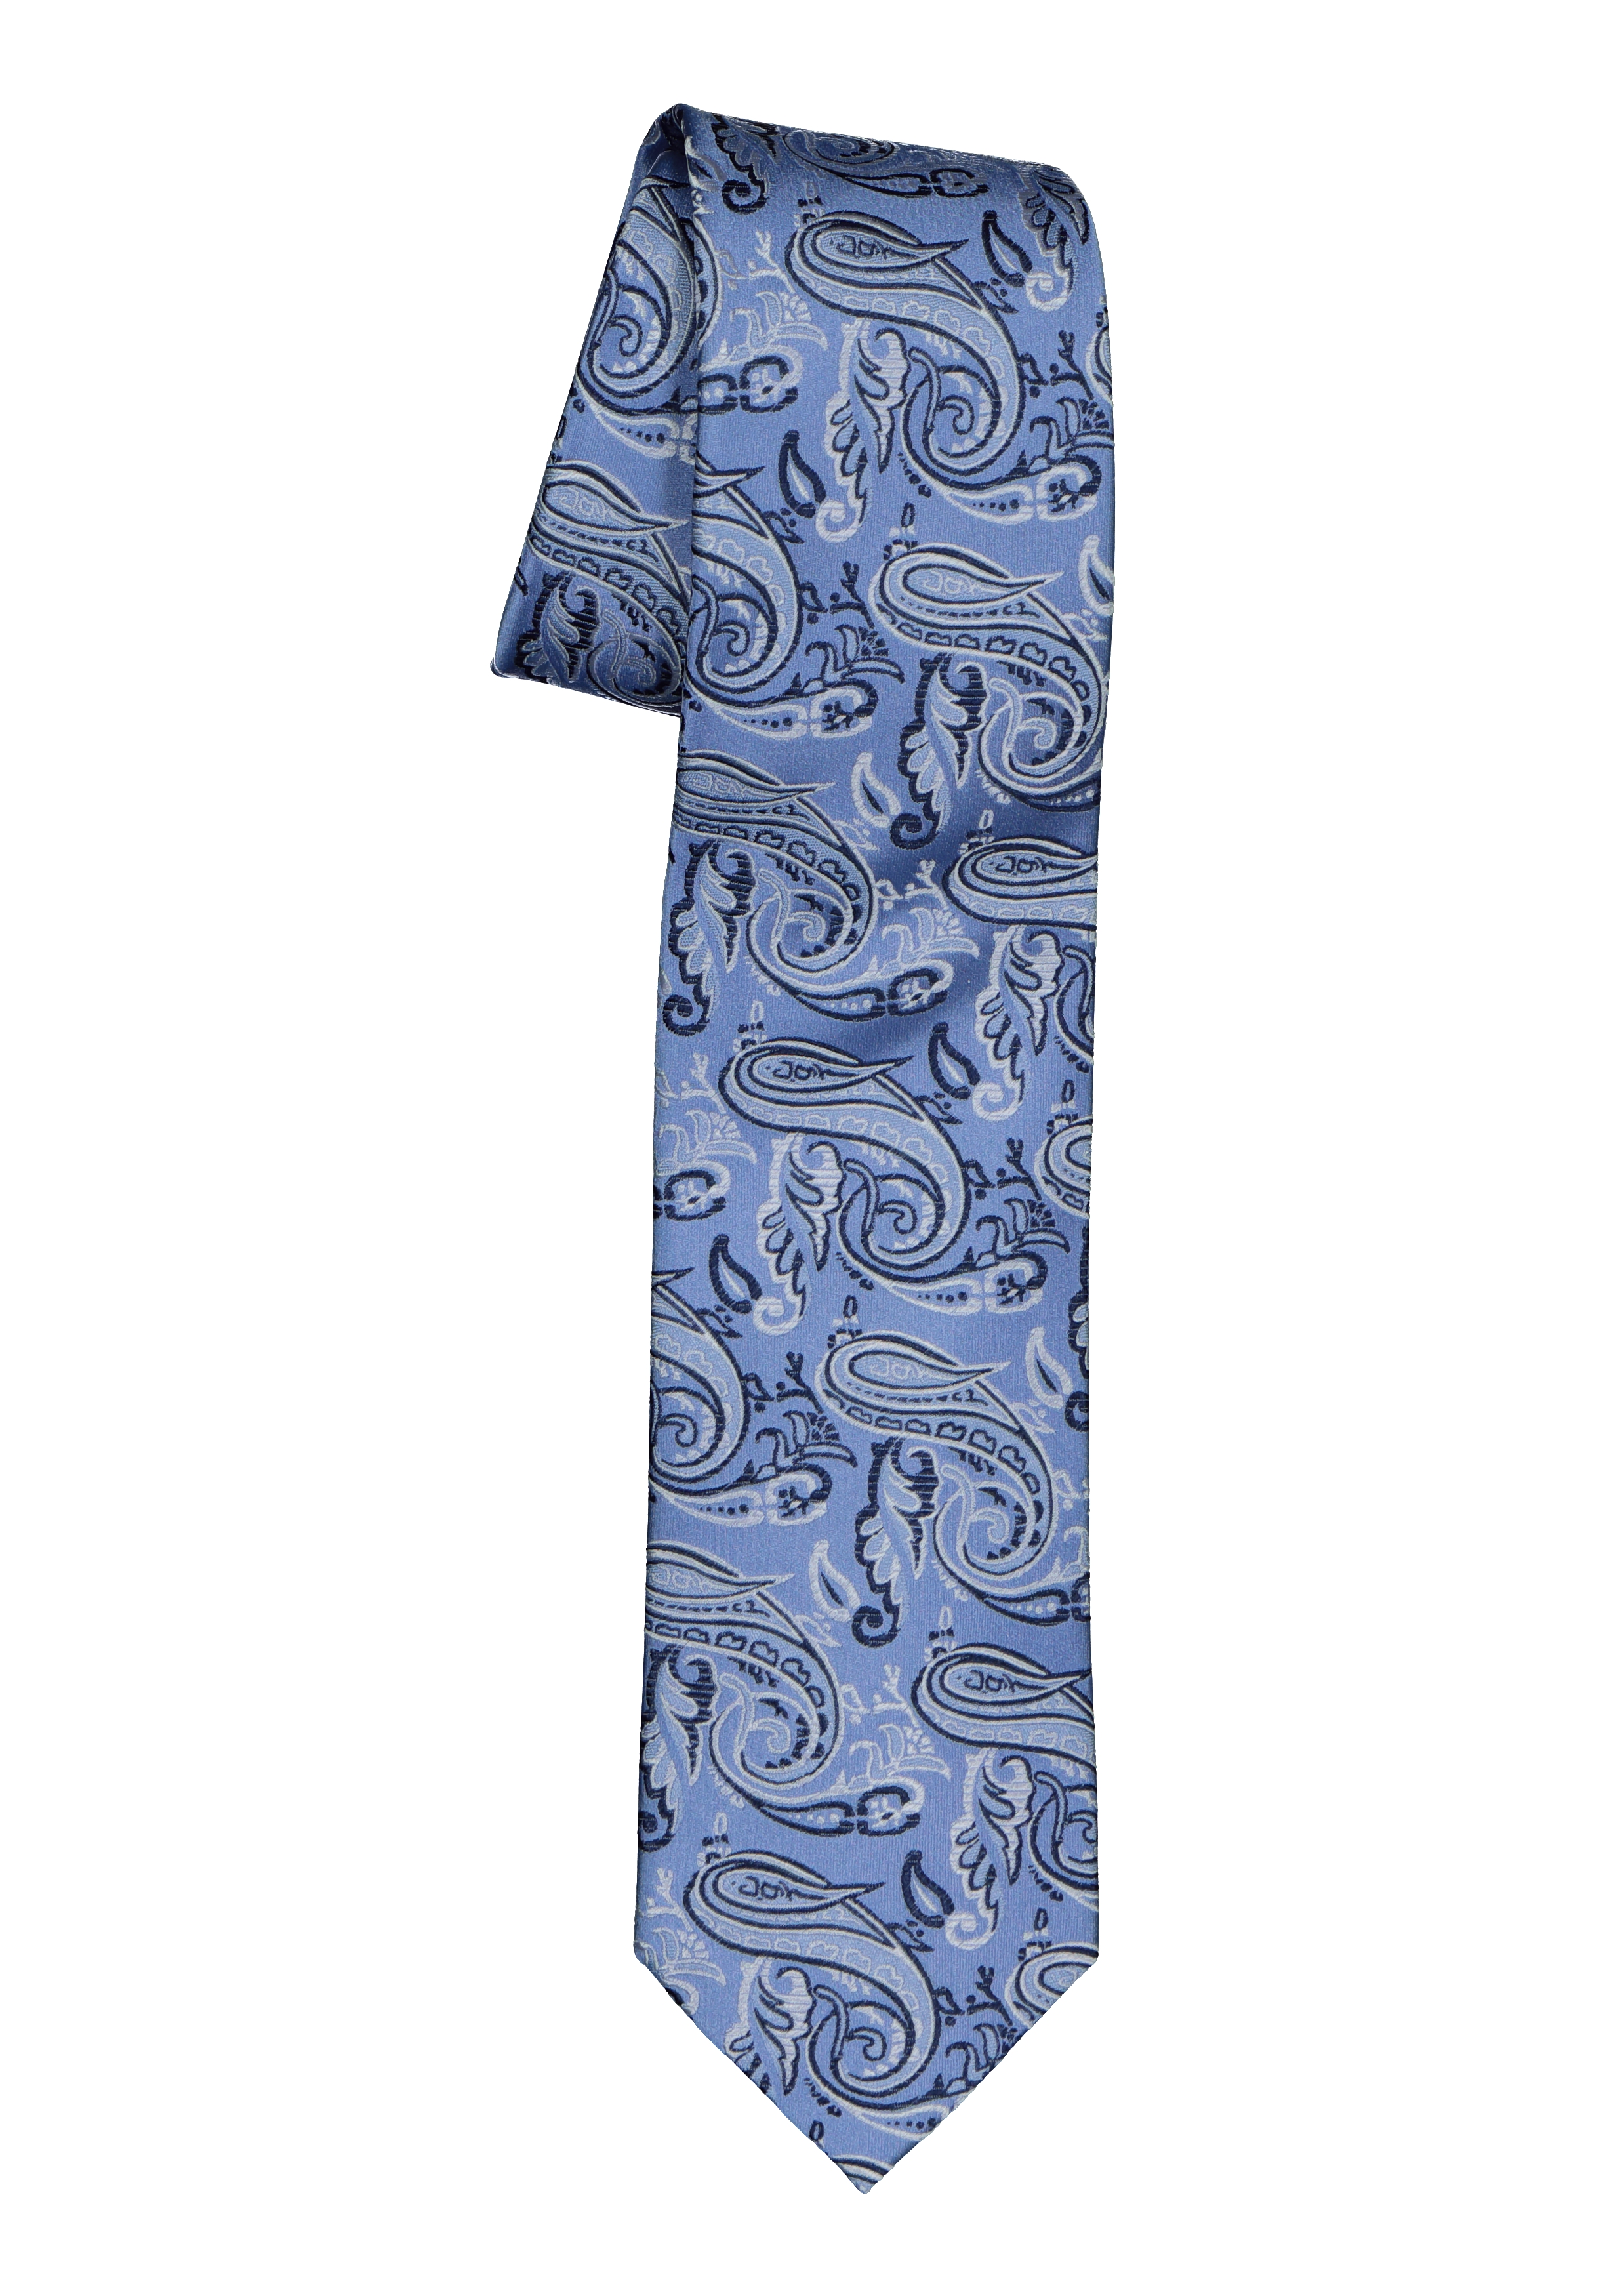 veronderstellen Roestig beweeglijkheid Pelucio stropdas, blauw paisley - Shop de nieuwste voorjaarsmode